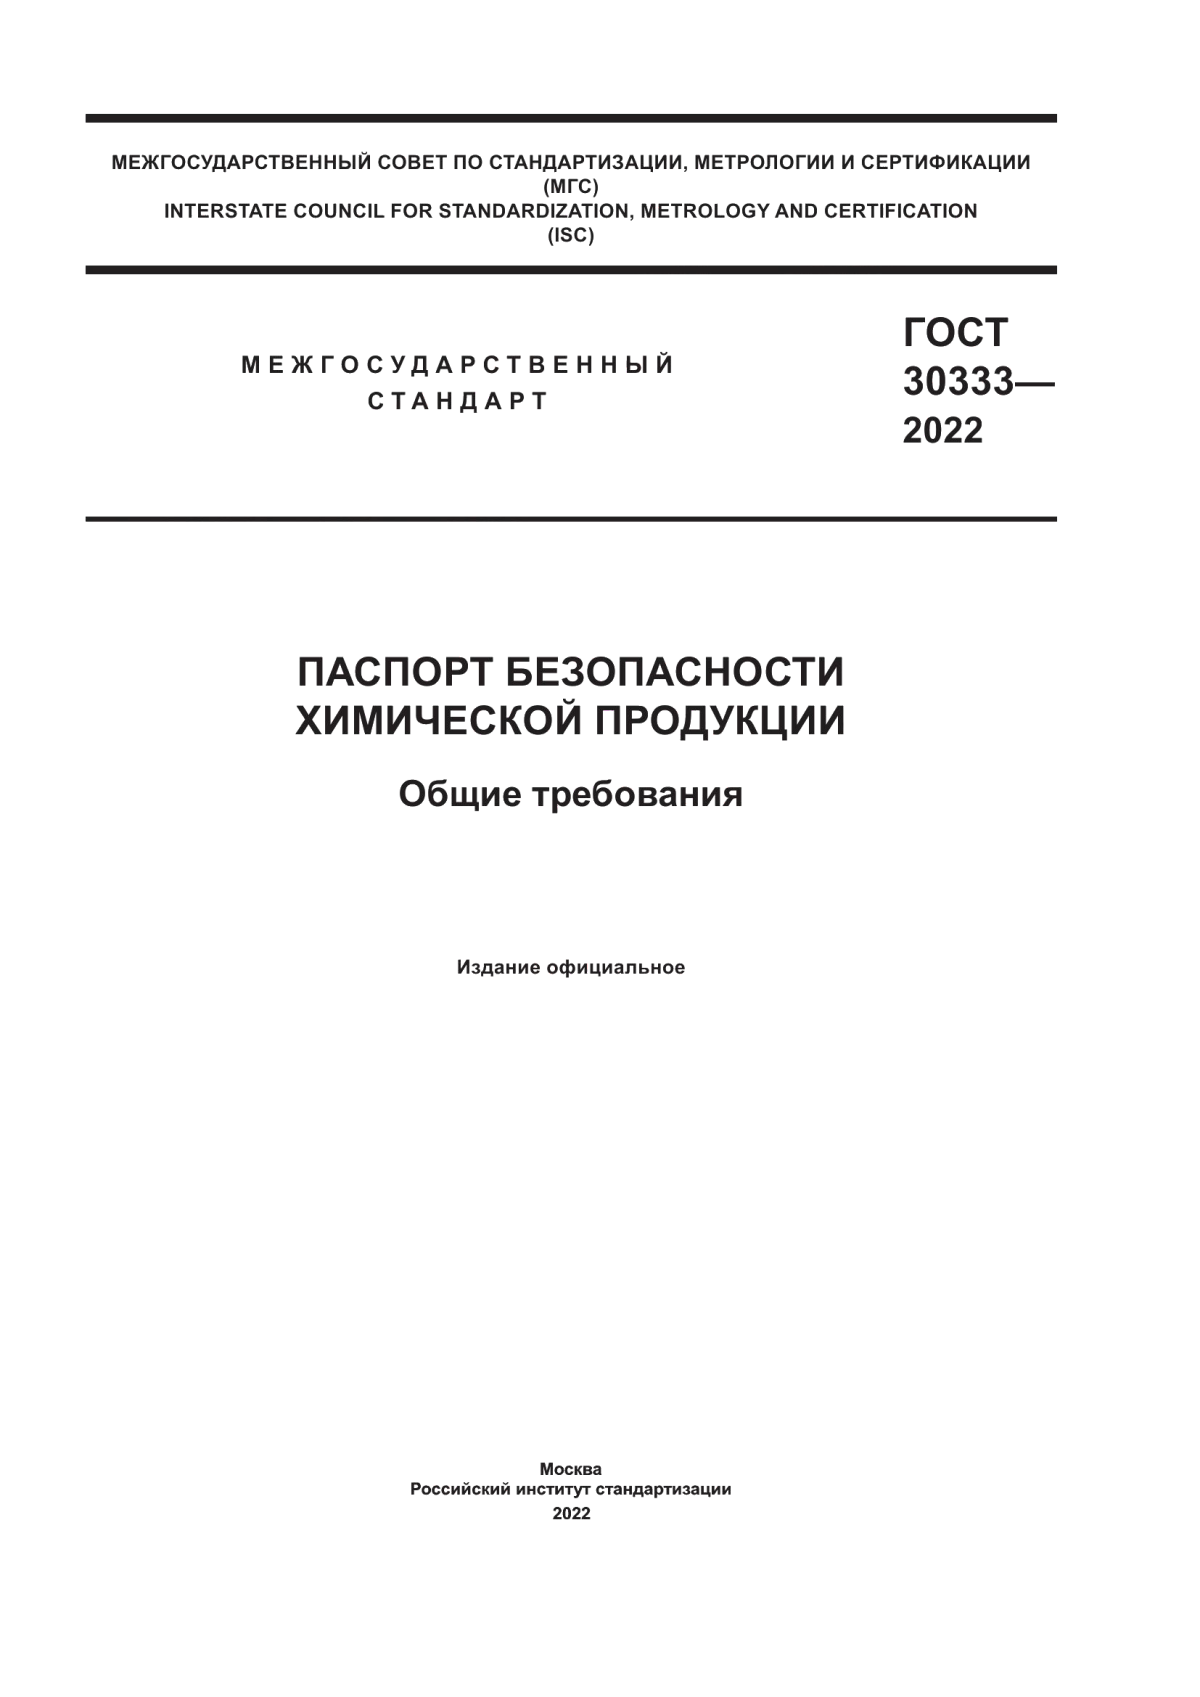 ГОСТ 30333-2022 Паспорт безопасности химической продукции. Общие требования